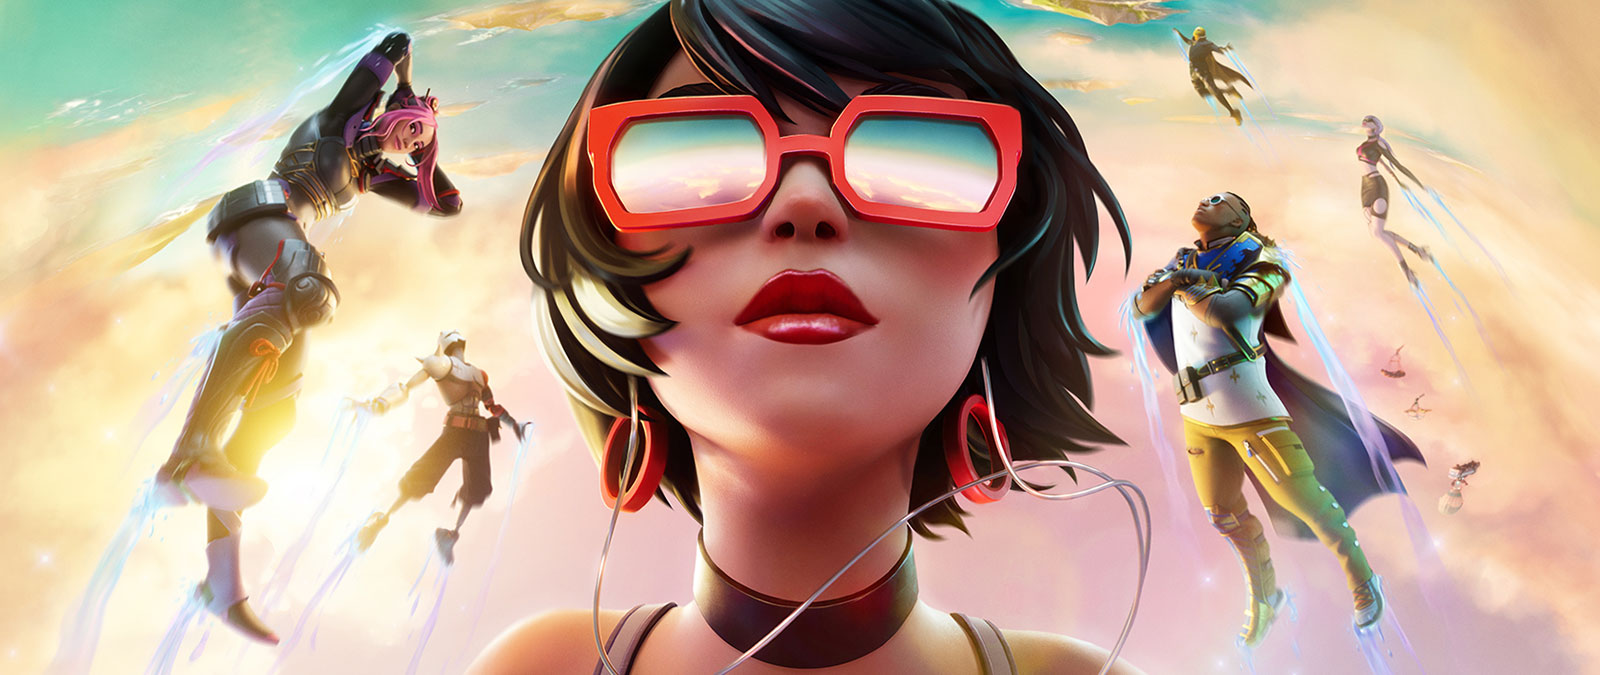 Dívka v červených slunečních brýlích se spolu s dalšími postavami vznáší v oblacích na pozadí pastelově zbarvené oblohy.